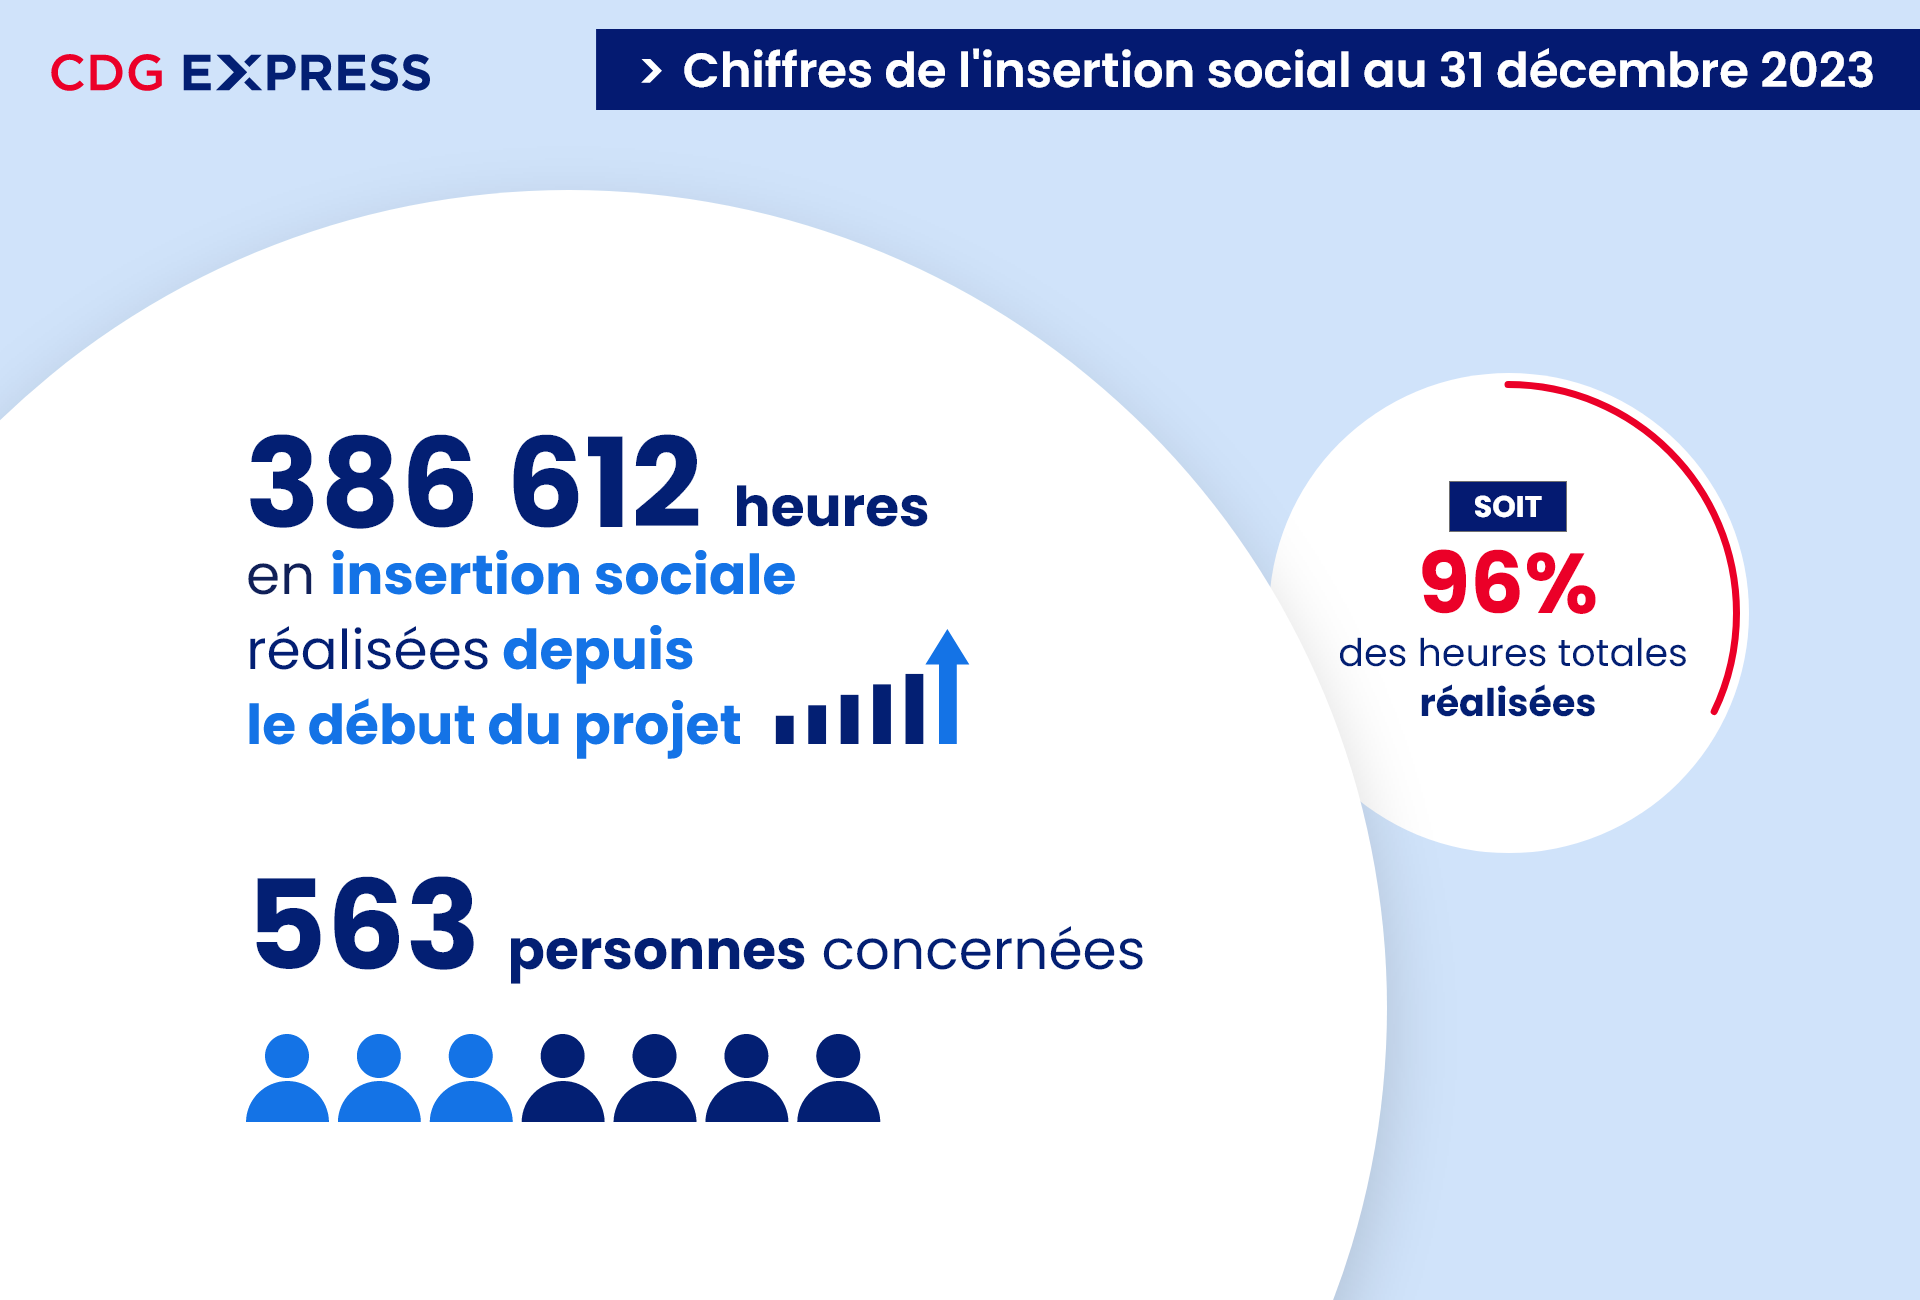 Chiffres de l'insertion sociale du CDG Express au 31 décembre 2023